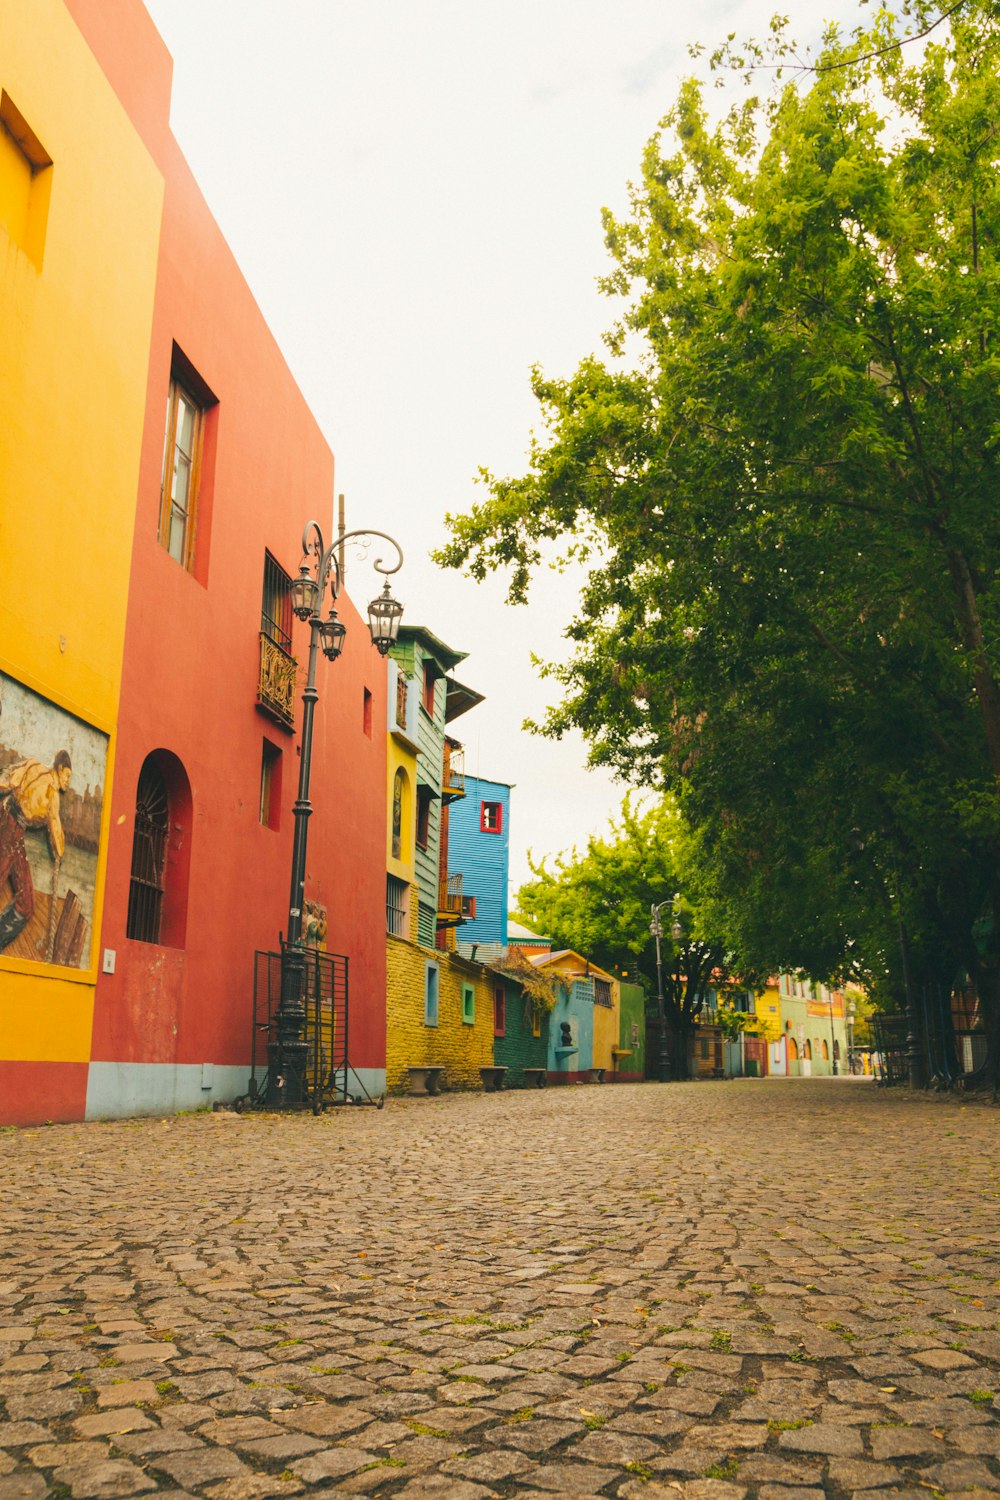 Une rue pavée bordée de bâtiments aux couleurs vives